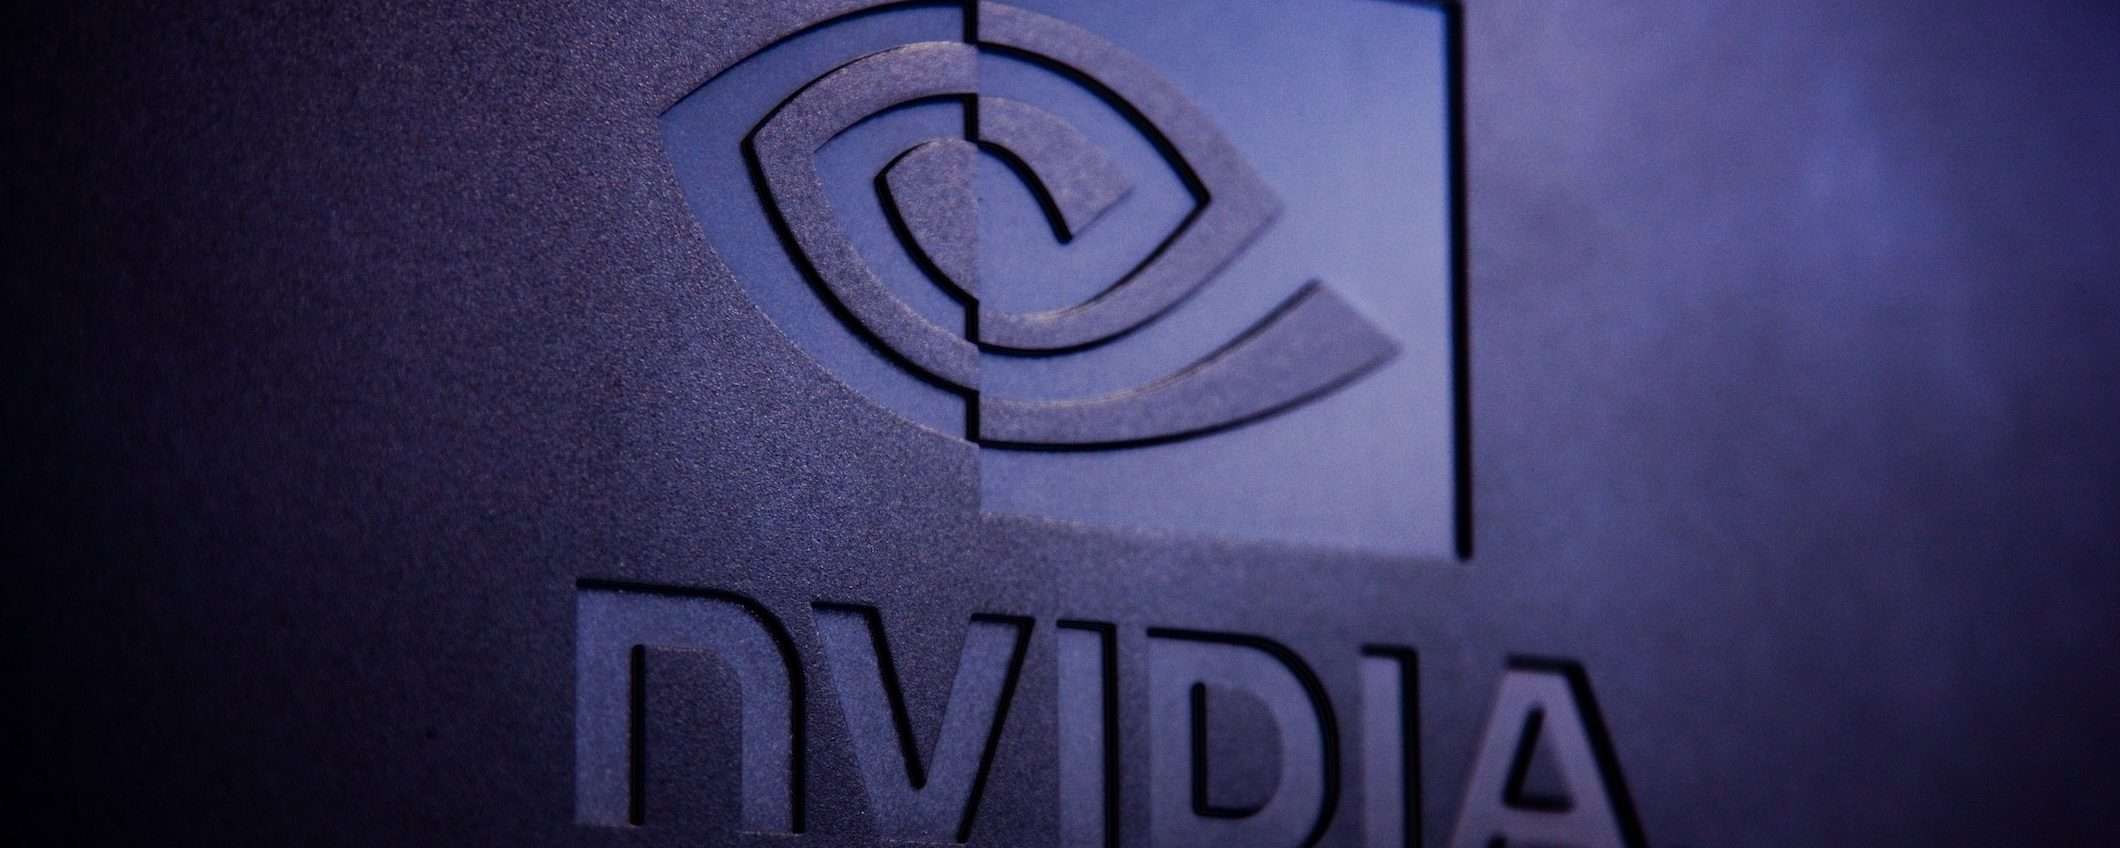 Nvidia e Intel, un'alleanza per produrre i chip